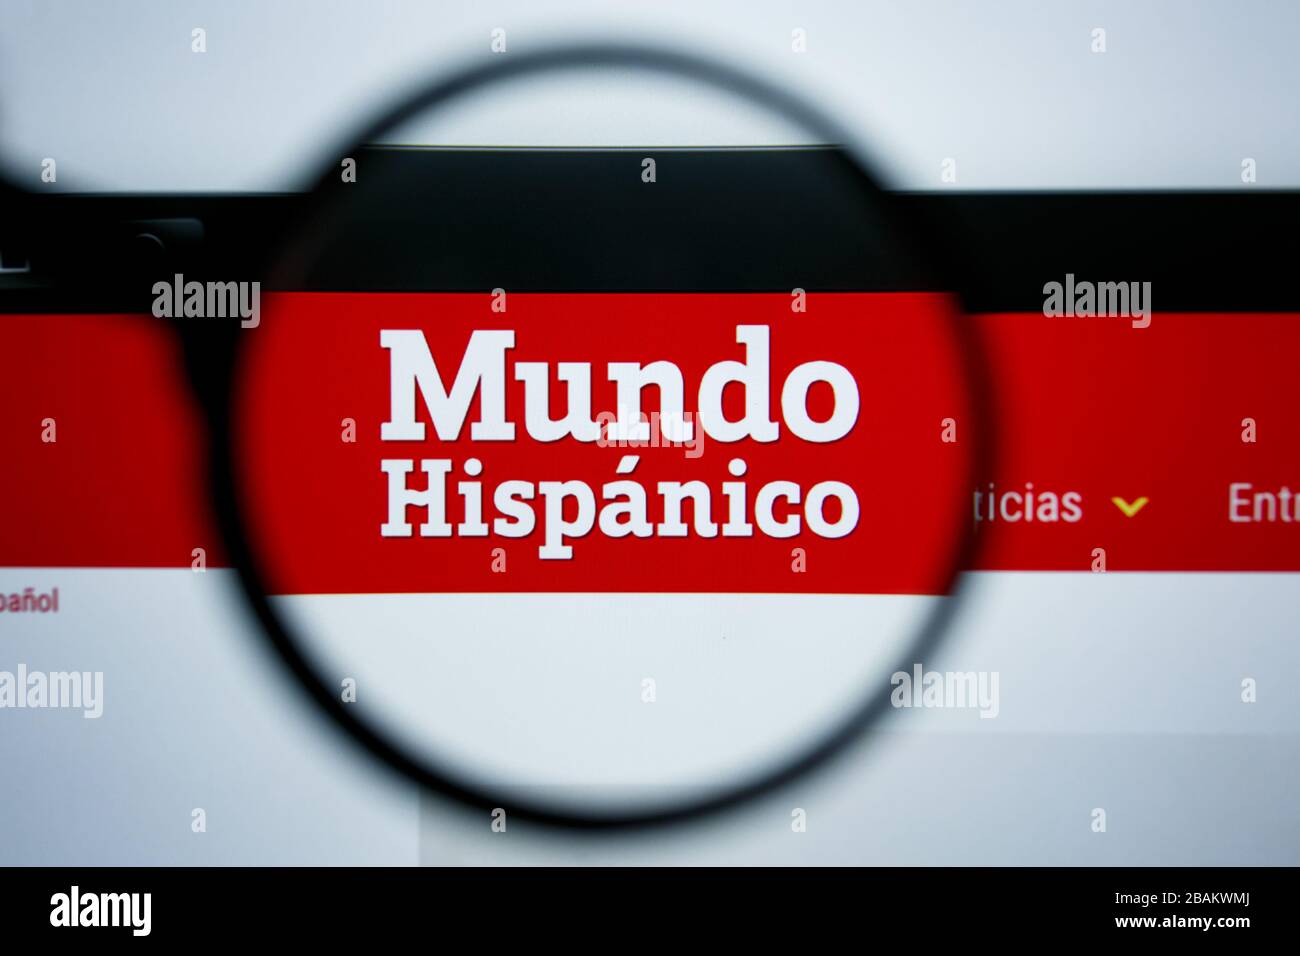 Los Angeles, California, USA - 25 Giugno 2019: Editoriale illustrativo della homepage del sito Mundo Hispanico. Logo Mundo Hispanico visibile in esposizione Foto Stock